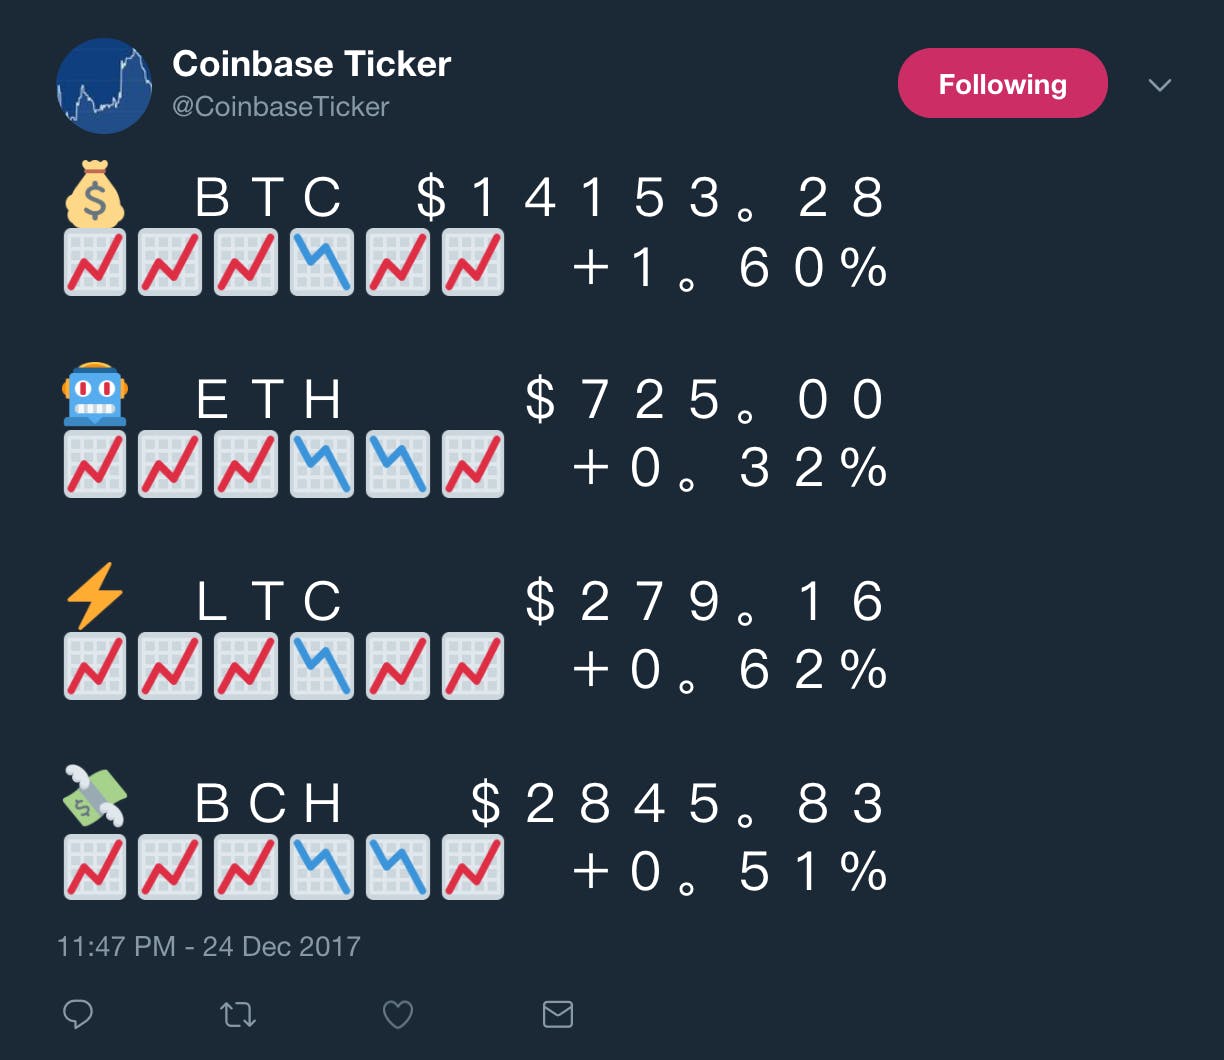 Coinbase Ticker media 2